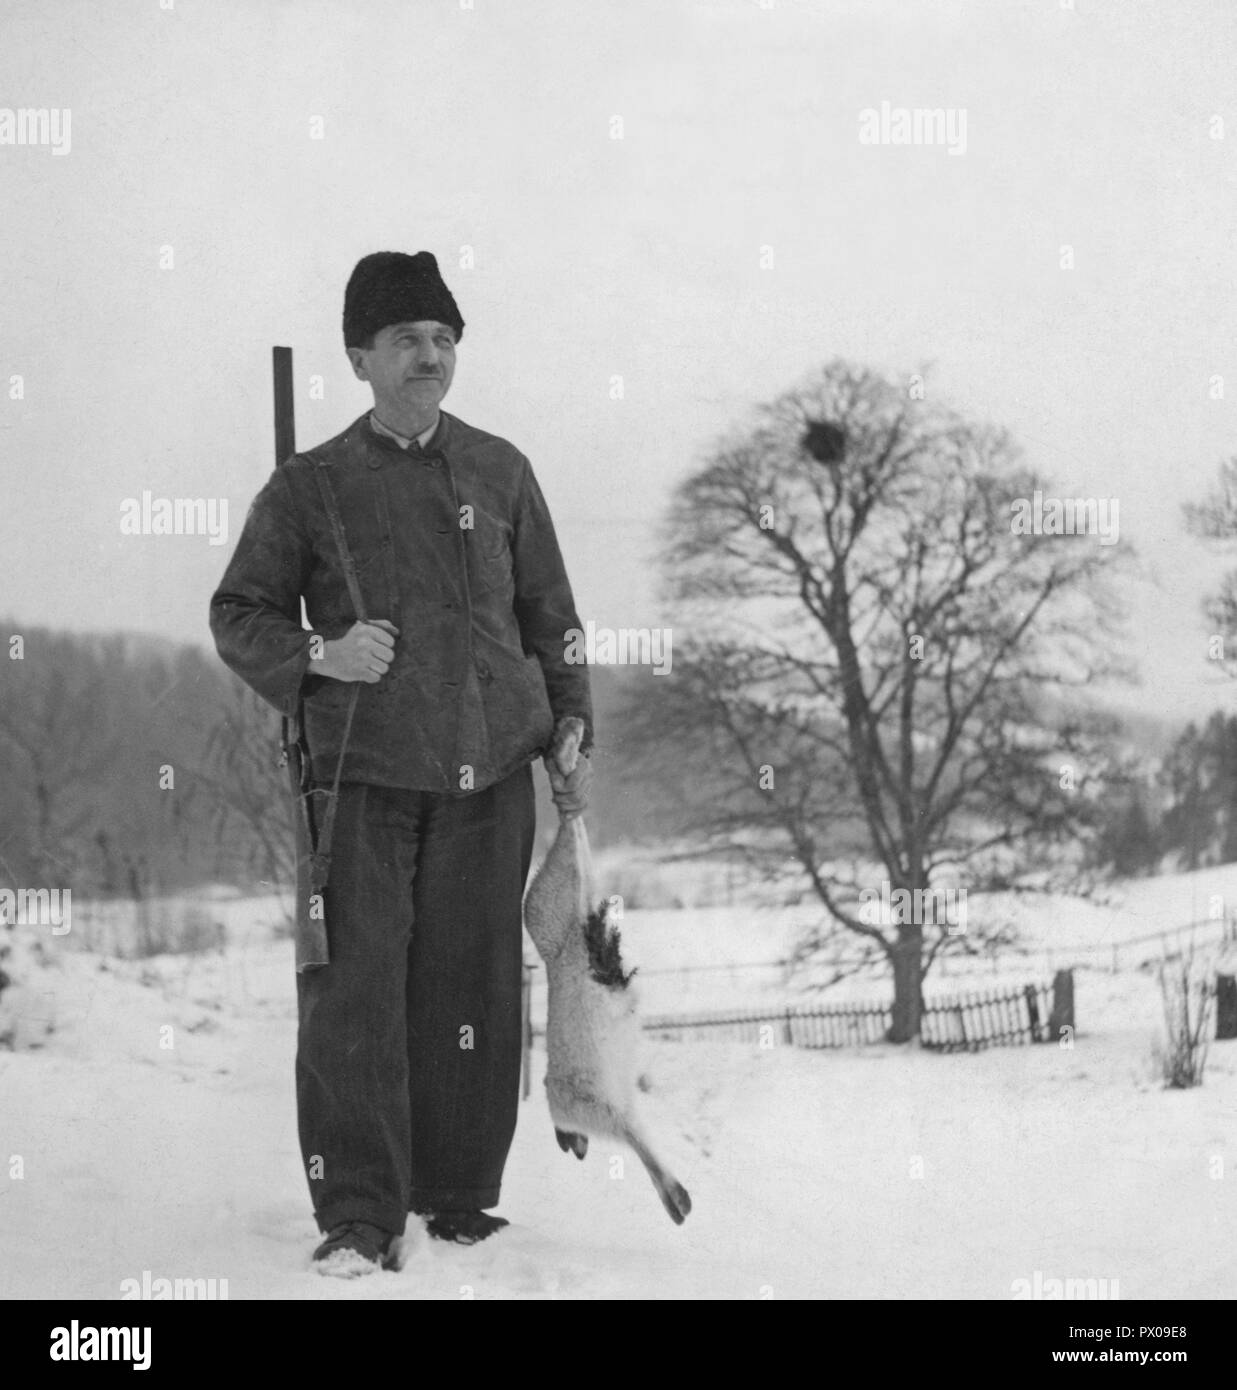 Hunter dans les années 40. Un homme est debout et tenant un lièvre qu'il a tourné lors de la chasse pour le lièvre traditionnel de Noël. Une tradition en décembre et souvent proche de noël. Suède 1940 Banque D'Images